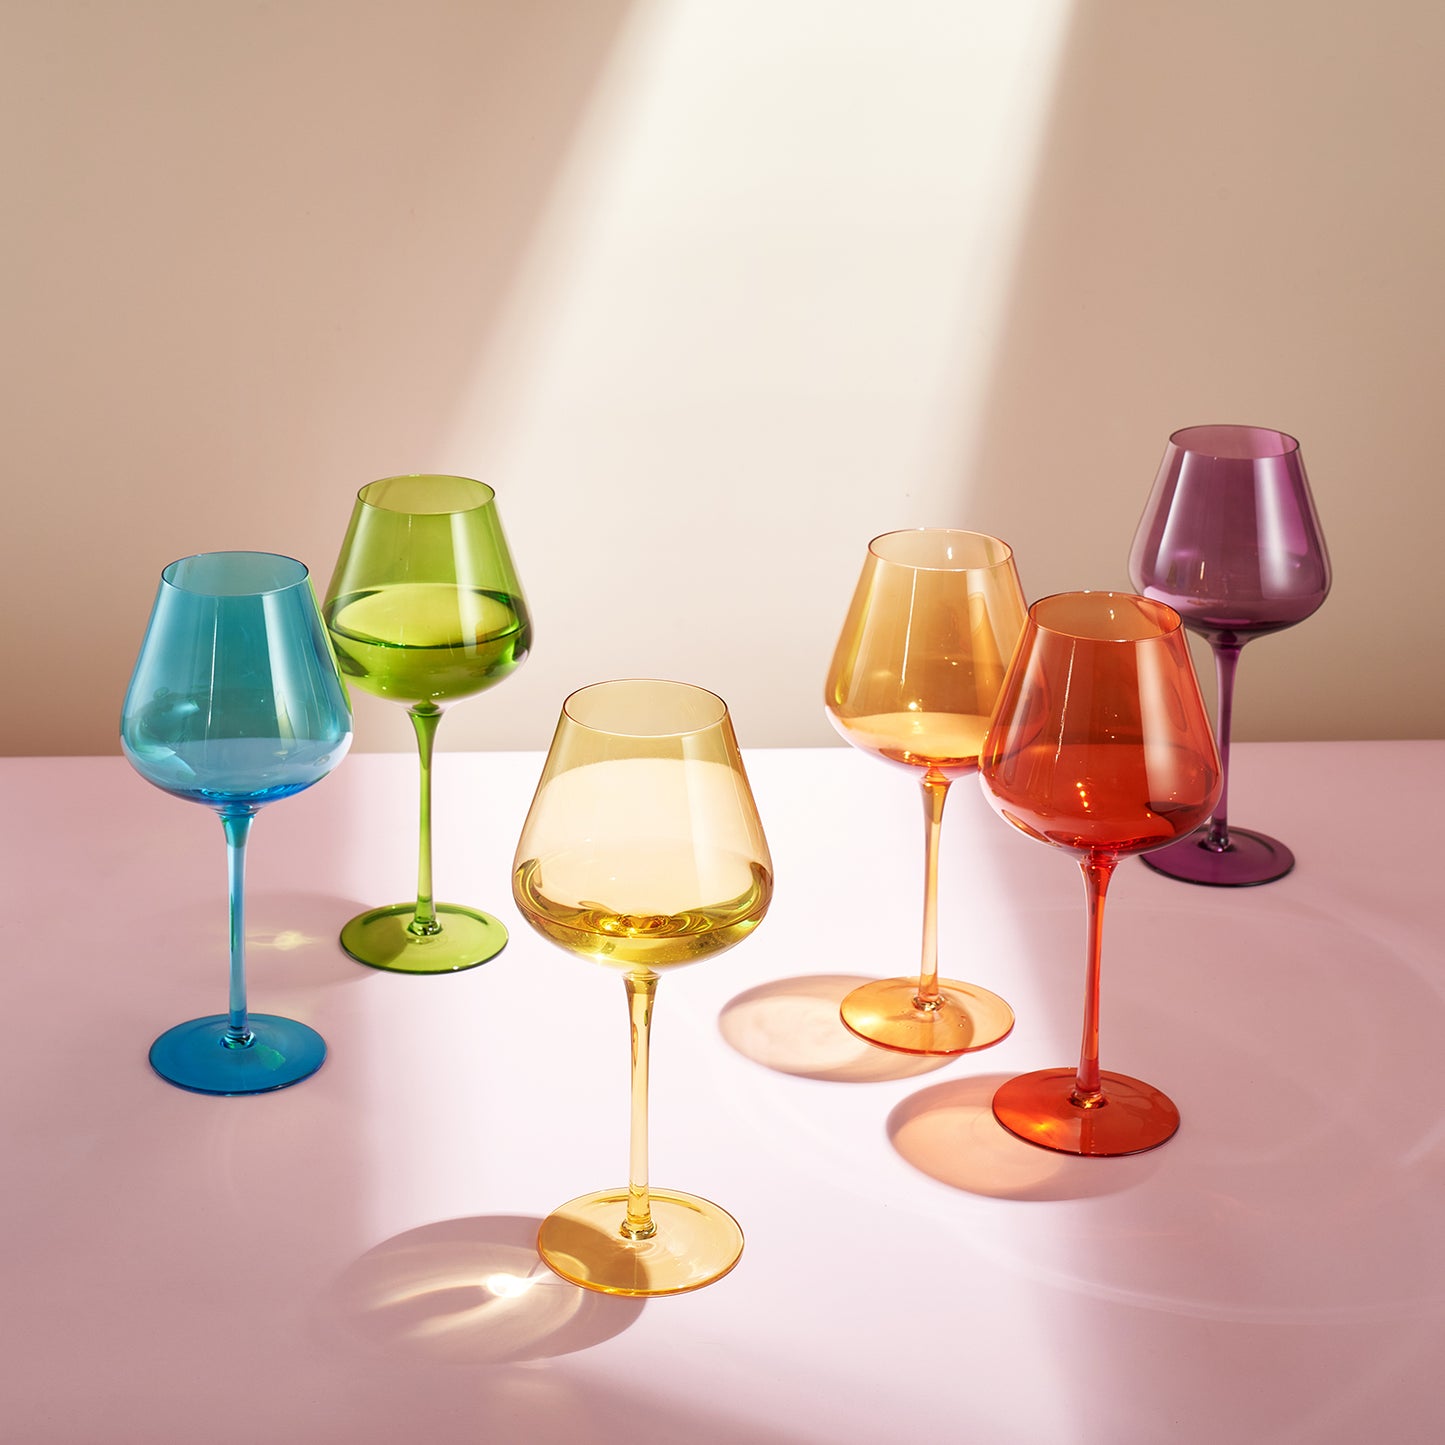 Stagioni Wine Glassware, Set of 6